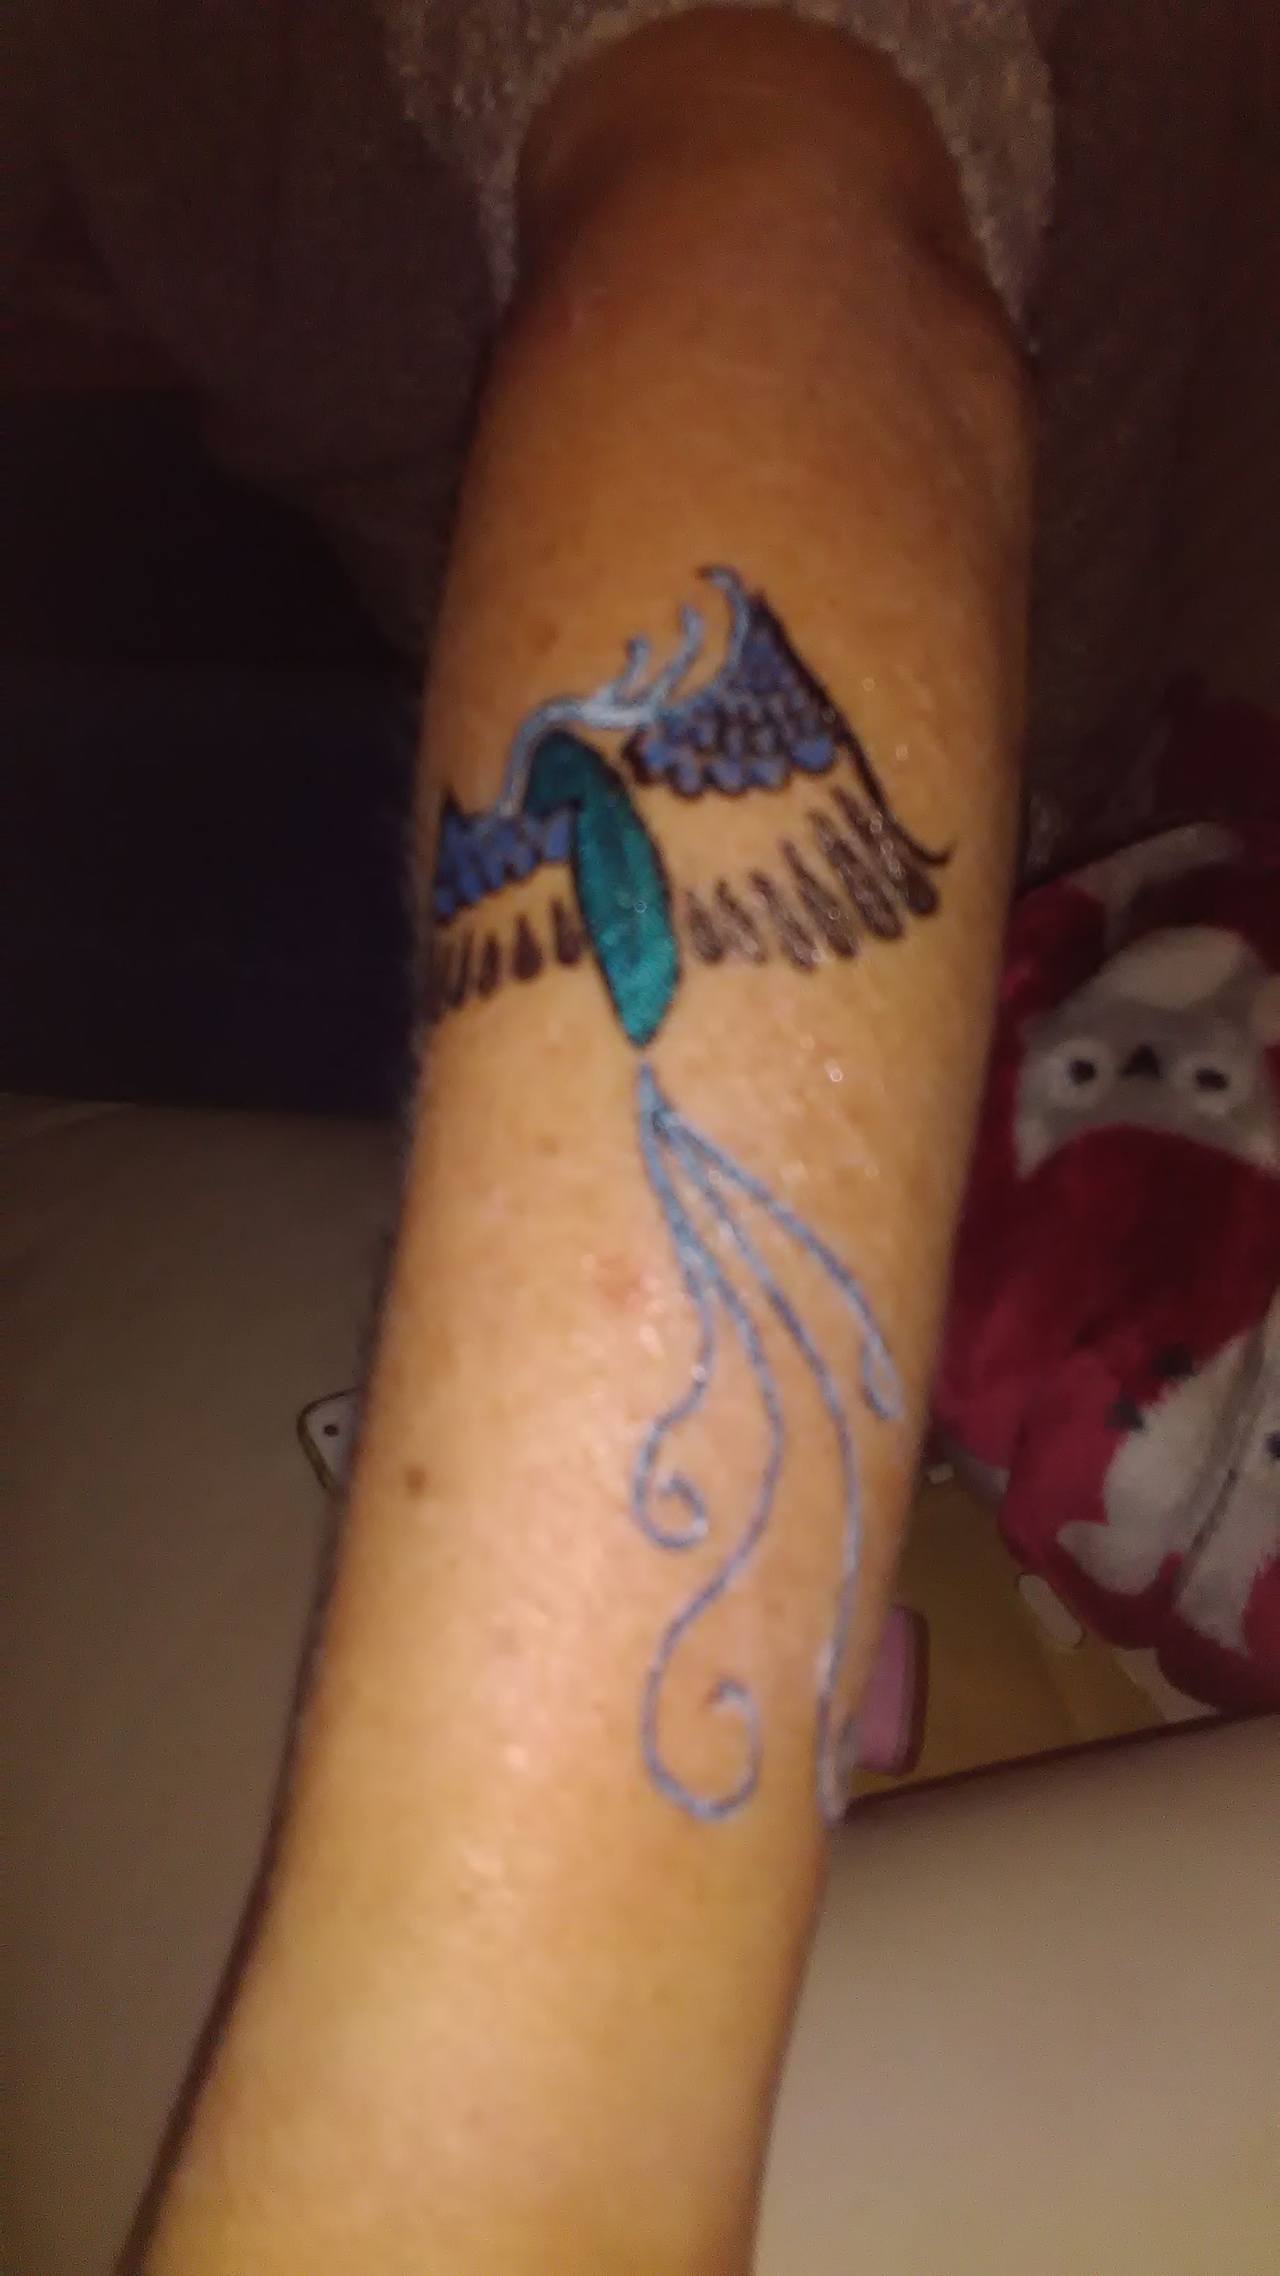 Hummingbird tattoo, Cool wrist tattoos, Semicolon tattoo